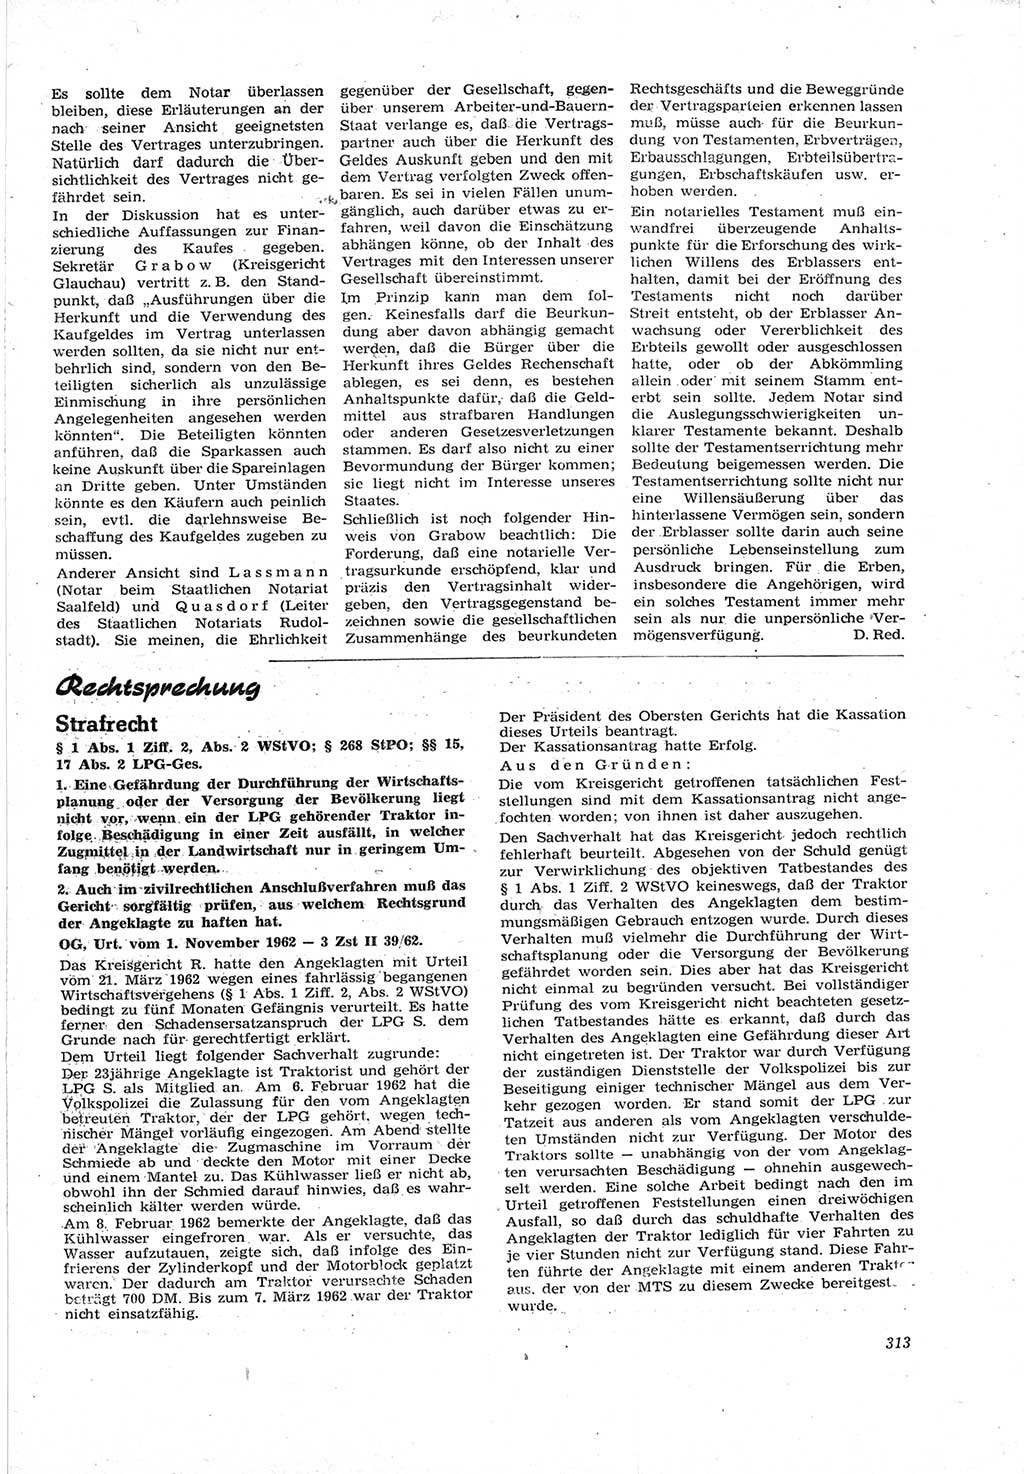 Neue Justiz (NJ), Zeitschrift für Recht und Rechtswissenschaft [Deutsche Demokratische Republik (DDR)], 17. Jahrgang 1963, Seite 313 (NJ DDR 1963, S. 313)